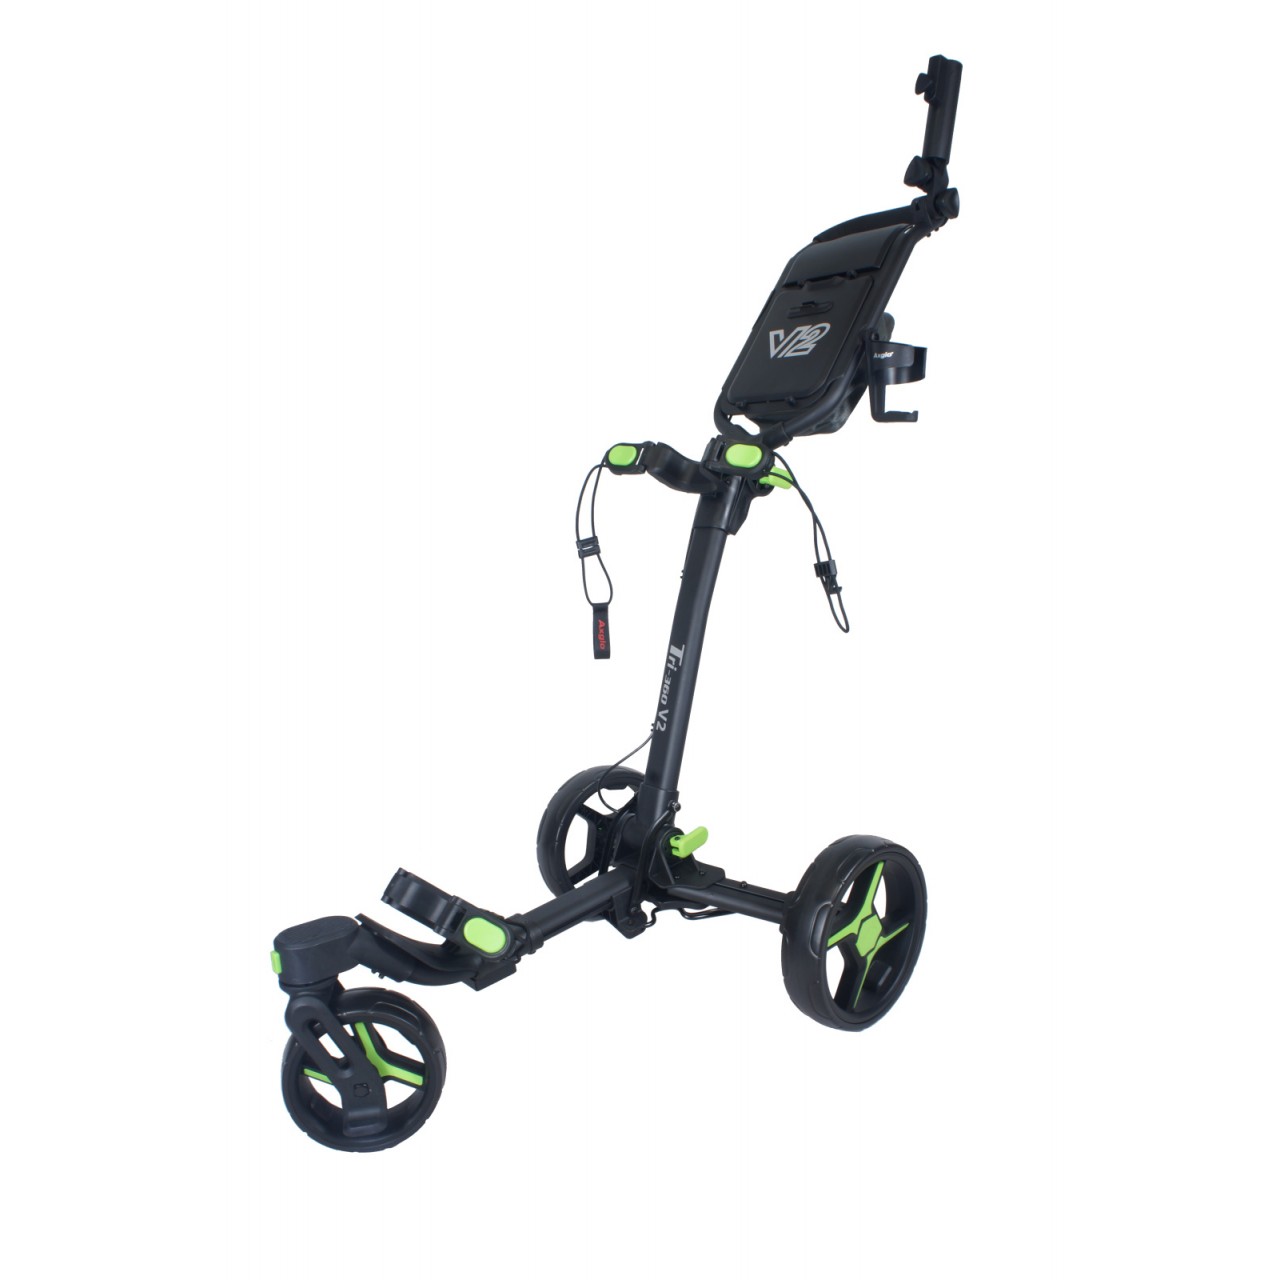 AXGLO Tri-360 V2 ruèní tøíkolový golfový vozík BLACK/GREEN + ZDARMA obal na kola - zvìtšit obrázek